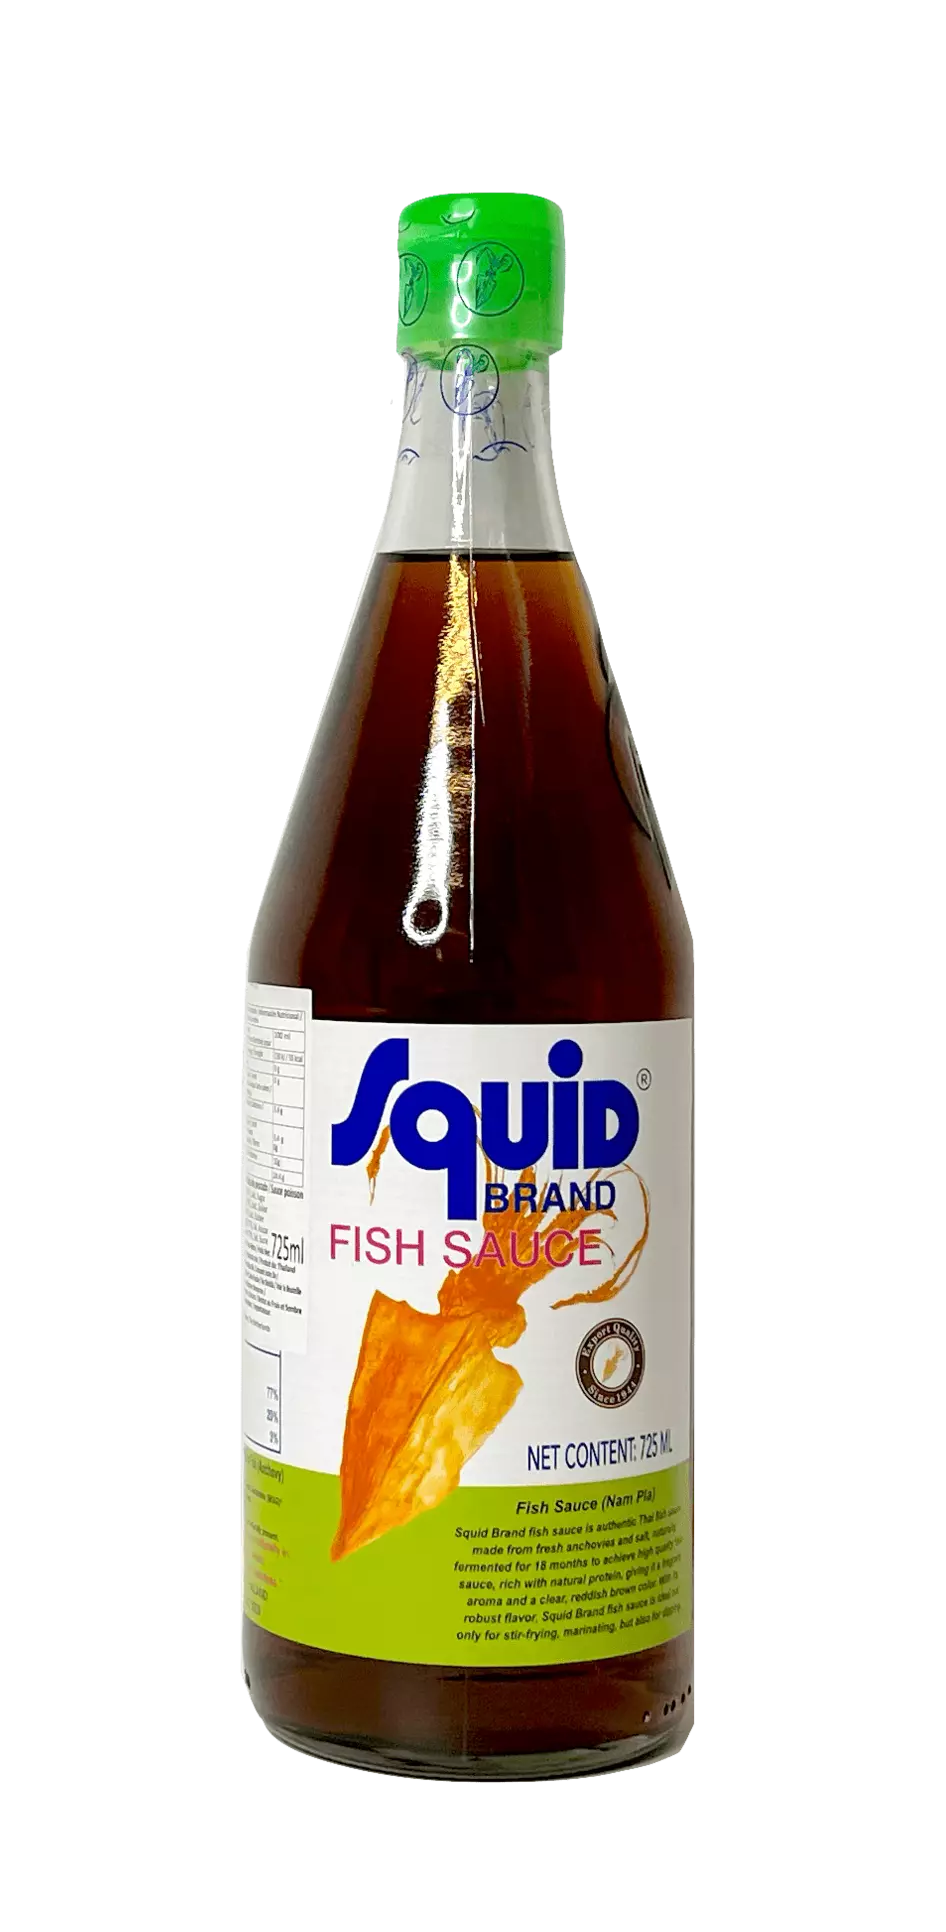 Fish sauce in Glass bottle 725ml Squid Thailand